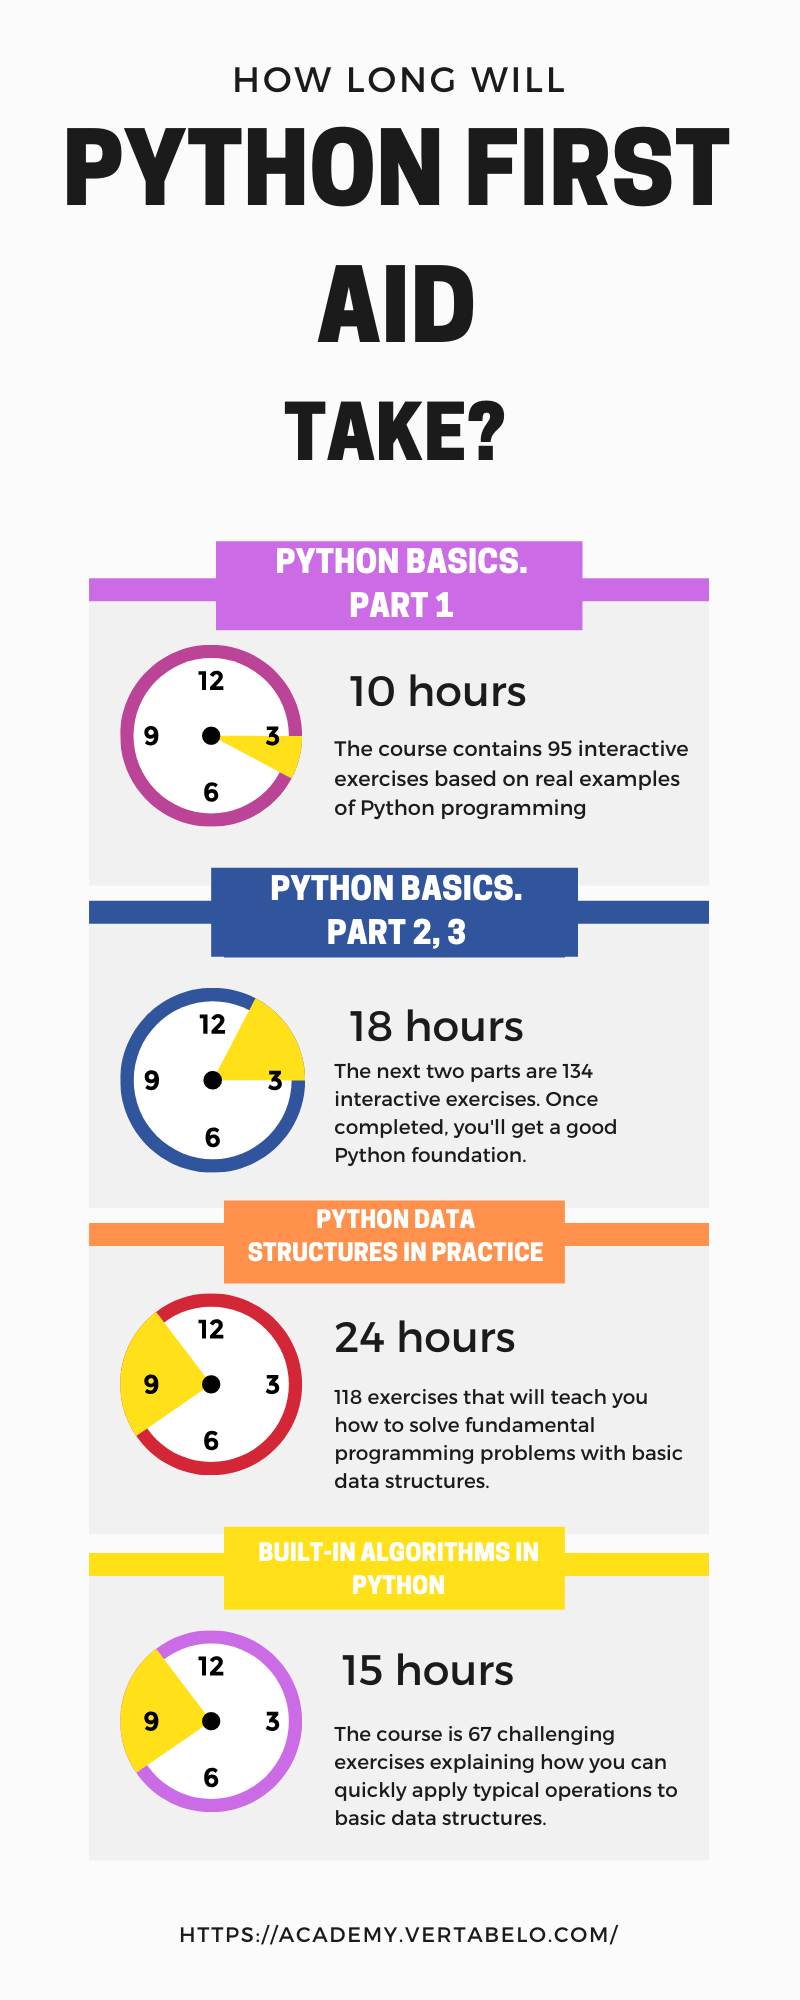 How do I become fluent in Python?